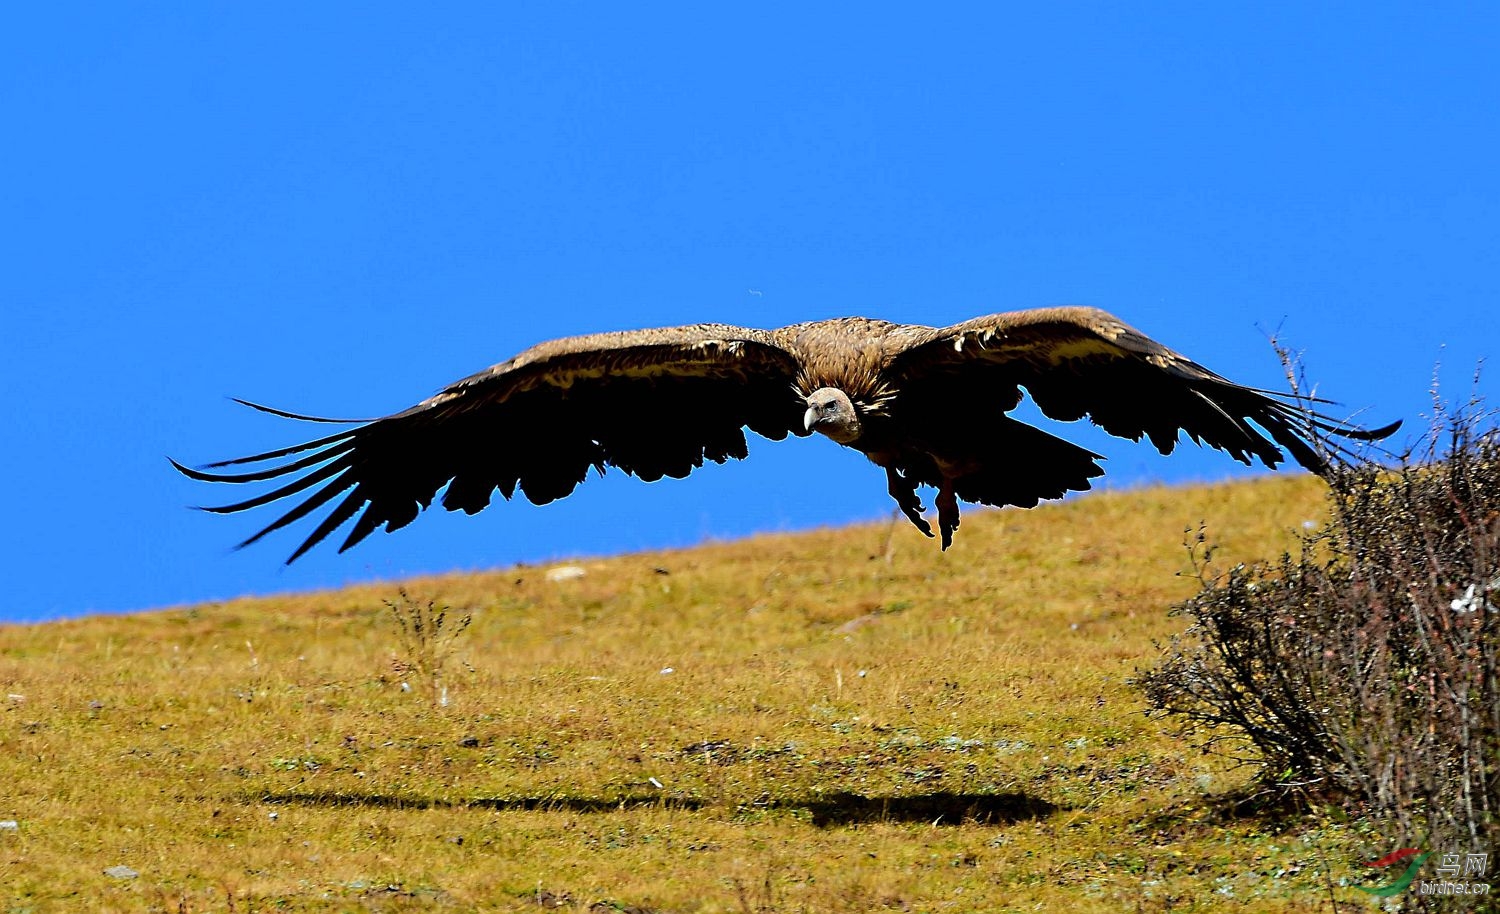 云南版祝西藏版向雄鹰般在蓝天下展翅高飞!